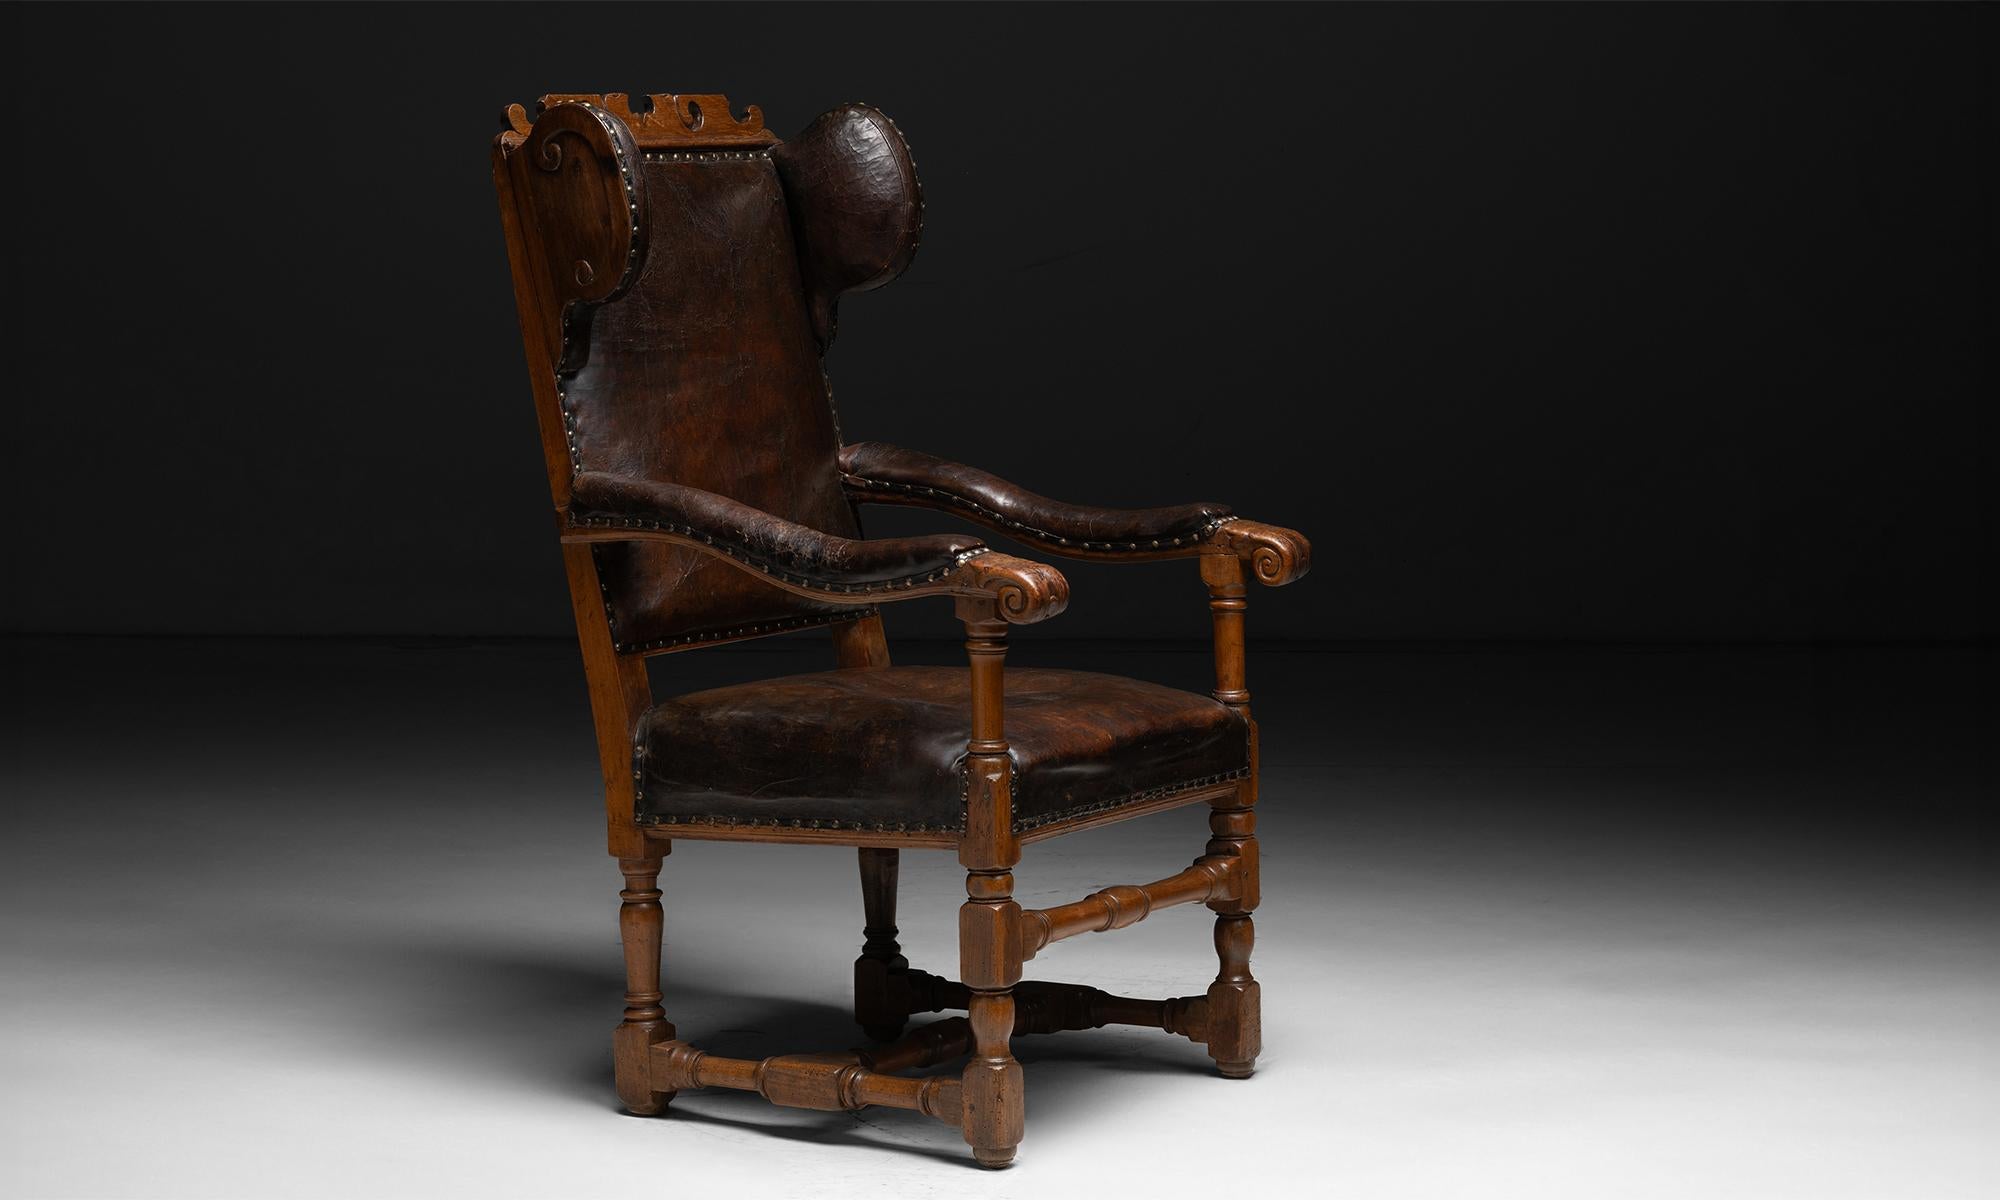 Fauteuil Wingback en cuir

Angleterre, 1747

Fauteuil à dos d'âne avec structure en orme et coussins en cuir. Rivets en laiton sur le pourtour du tissu, balustres sculptés et datés 